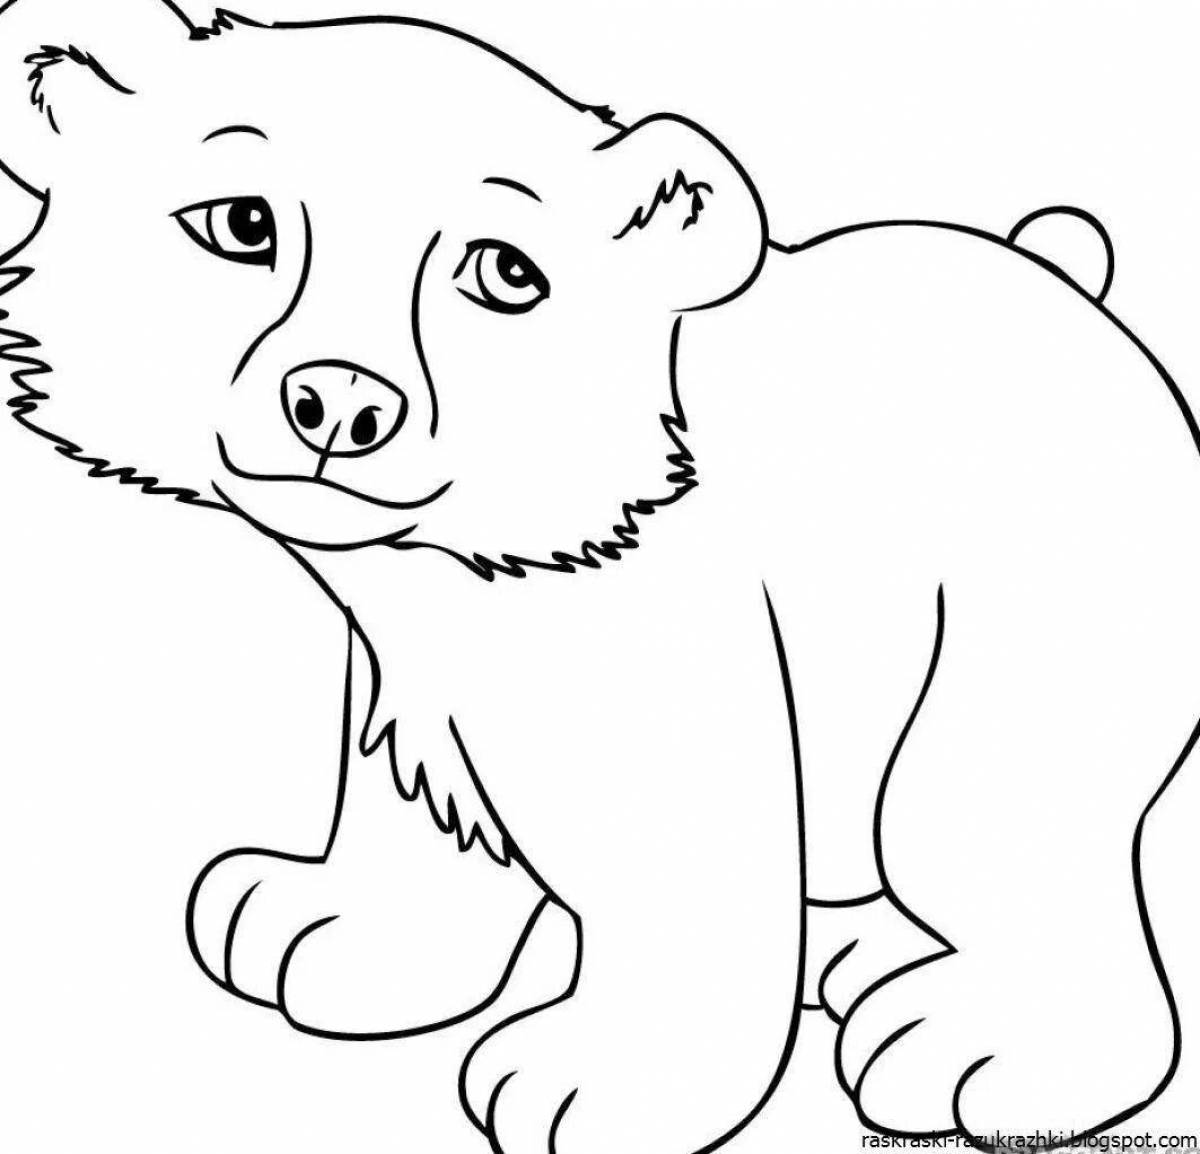 Распечатать раскраску зверей. Раскраска. Медвежонок. Раскраски животных для детей. Раскраска малышам животные. Медведь раскраска.